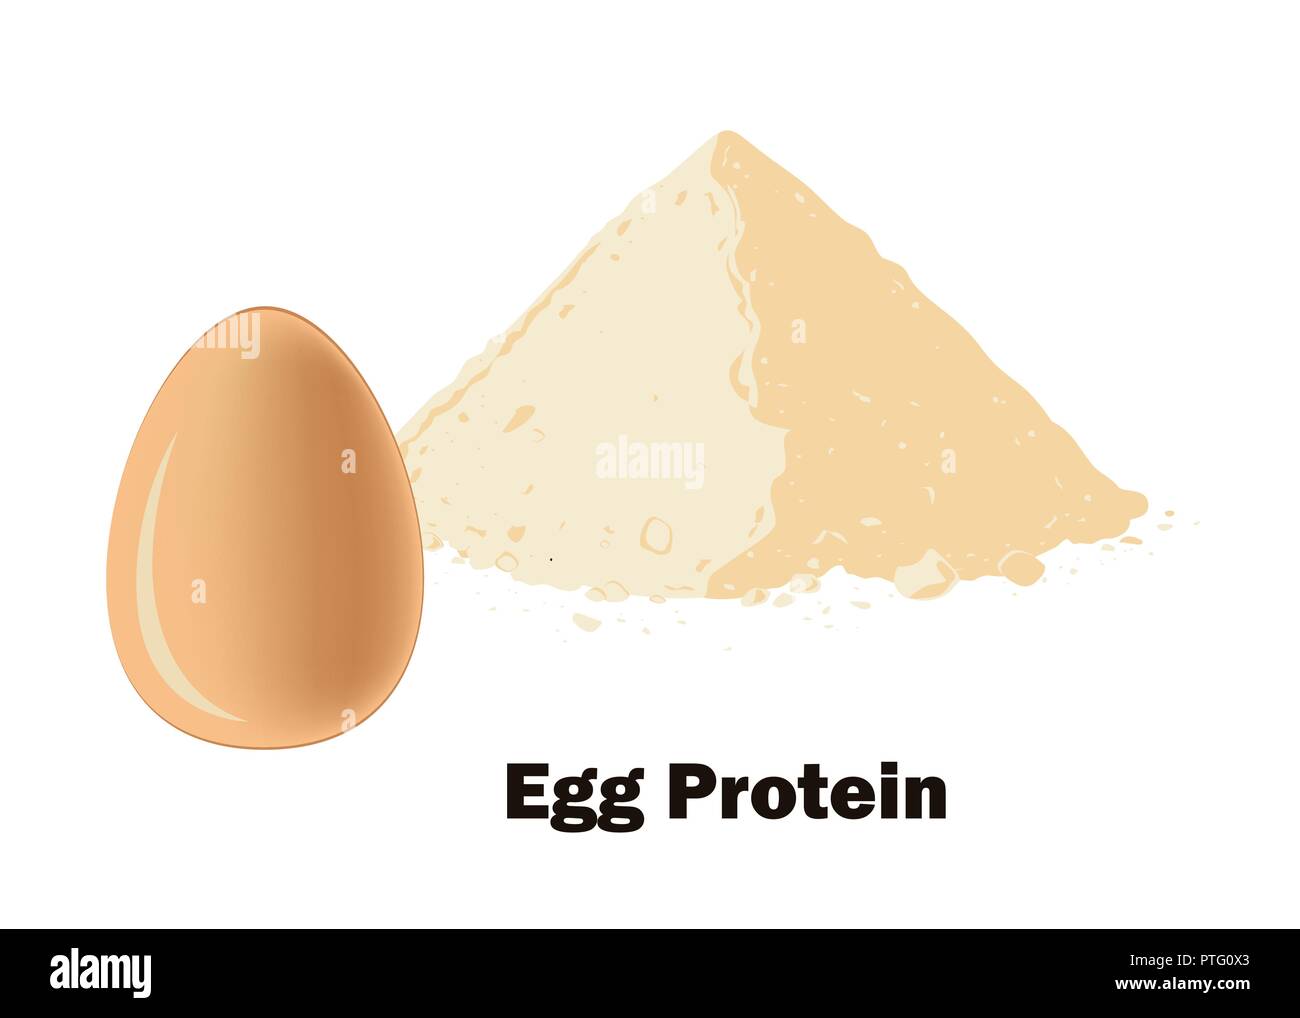 Egg Protein Pulver und das ganze Ei. Vector Illustration. Bodybuilding Supplement Konzept. Stock Vektor